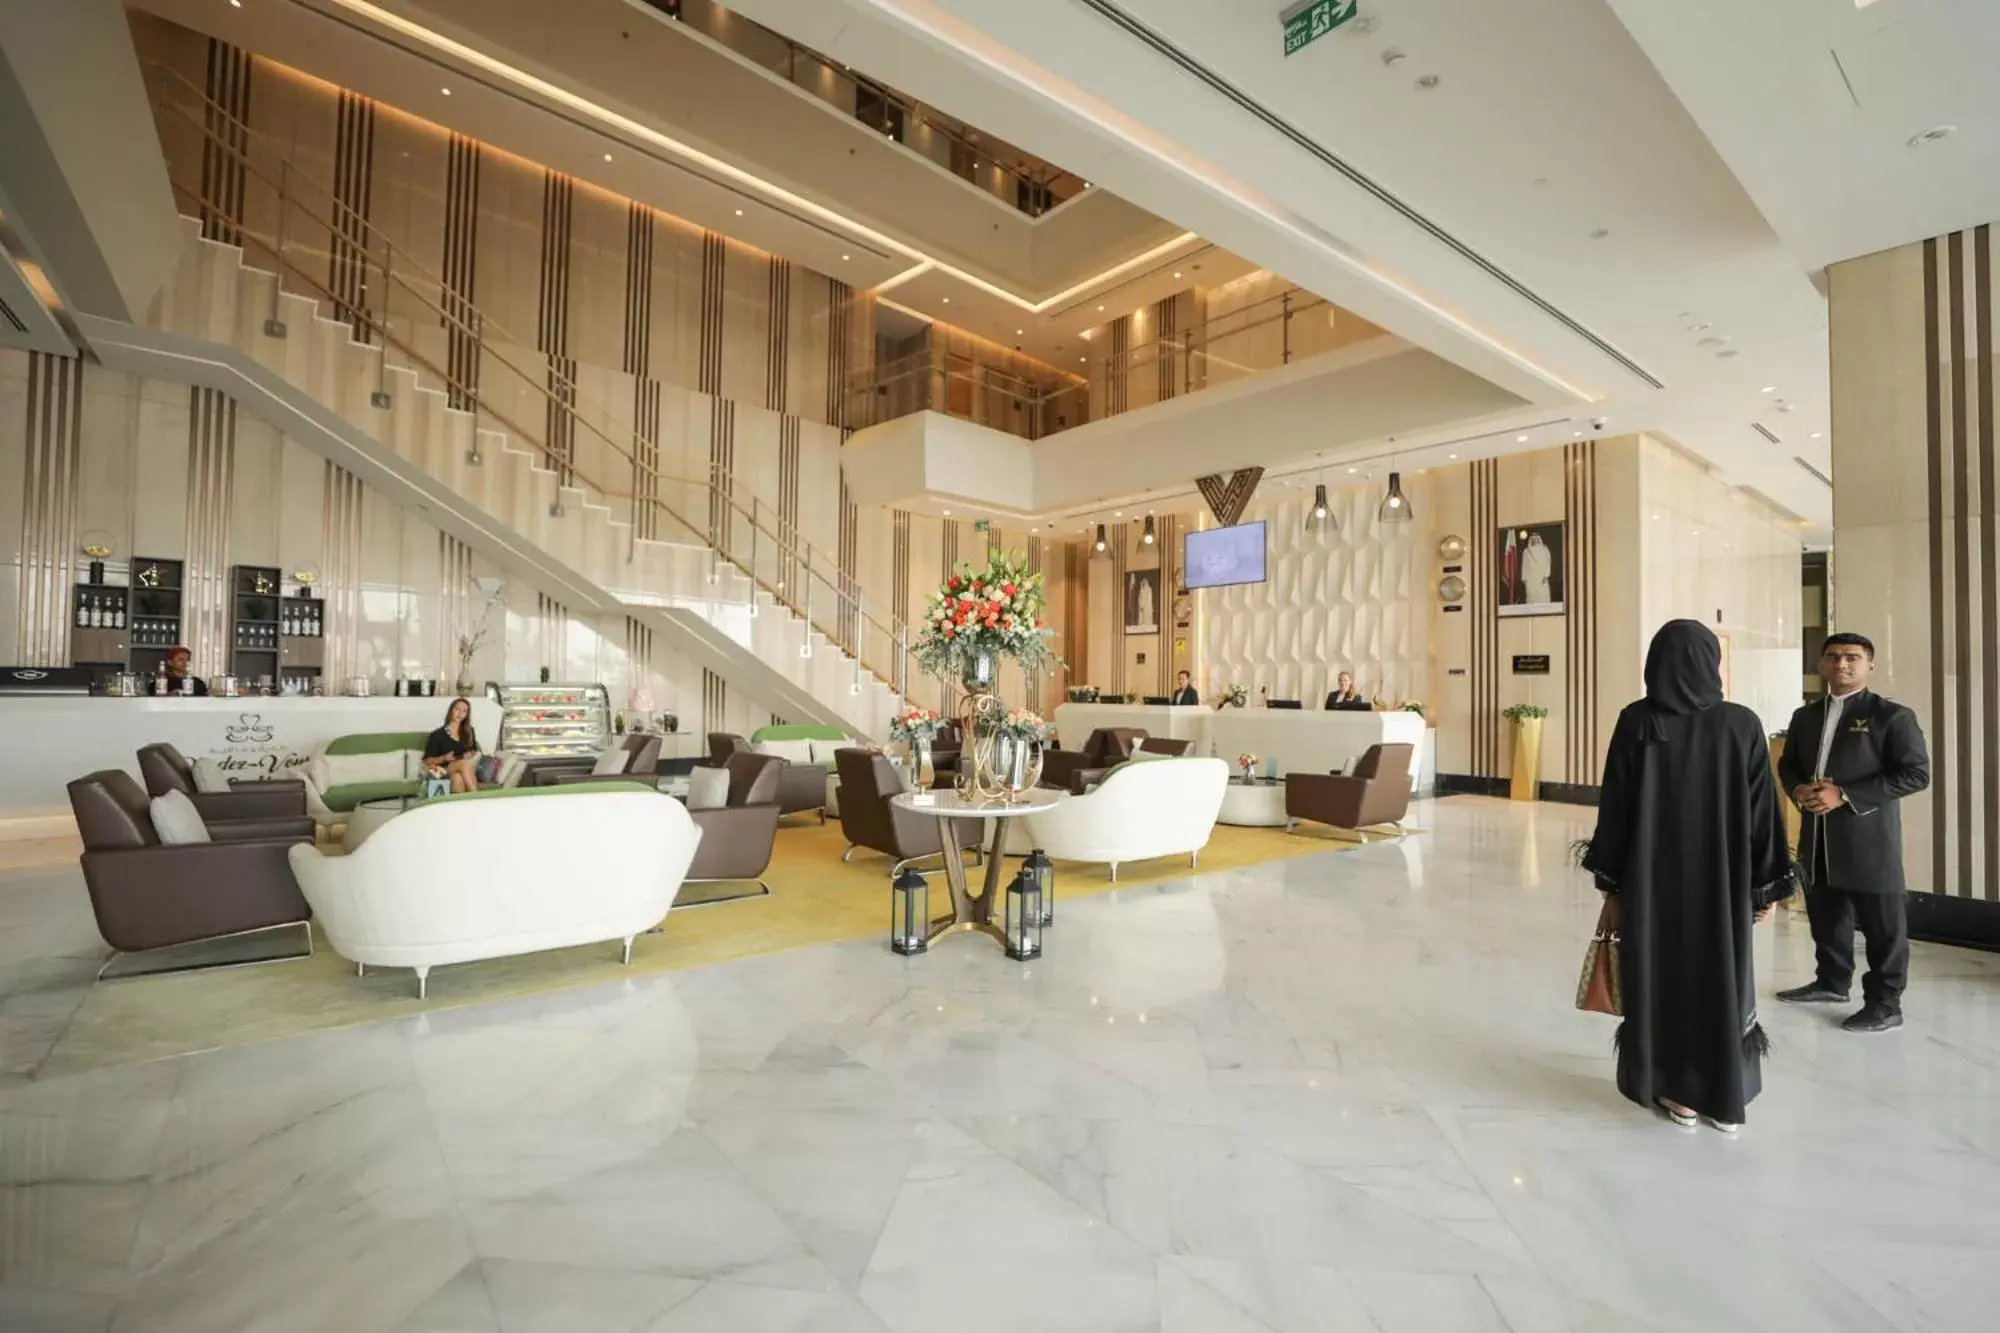 Lobby or reception, Lobby/Reception in VIP Hotel Doha Qatar